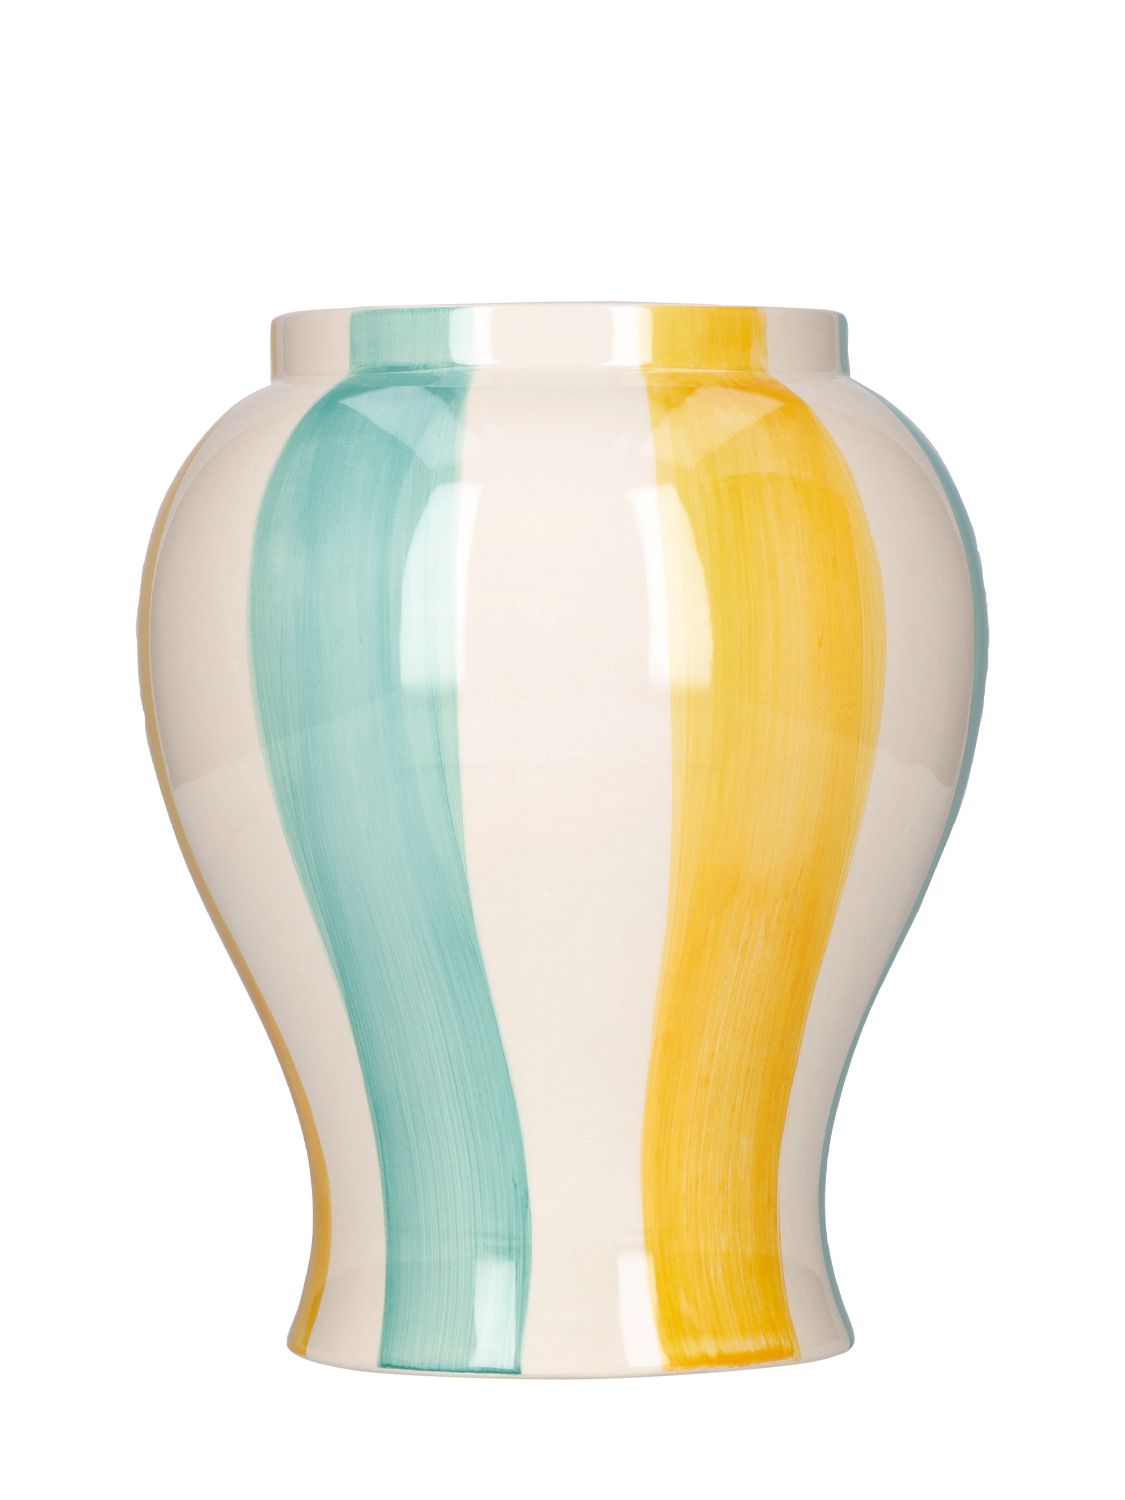 Hay Sobremesa Large Striped Vase In Multicolor